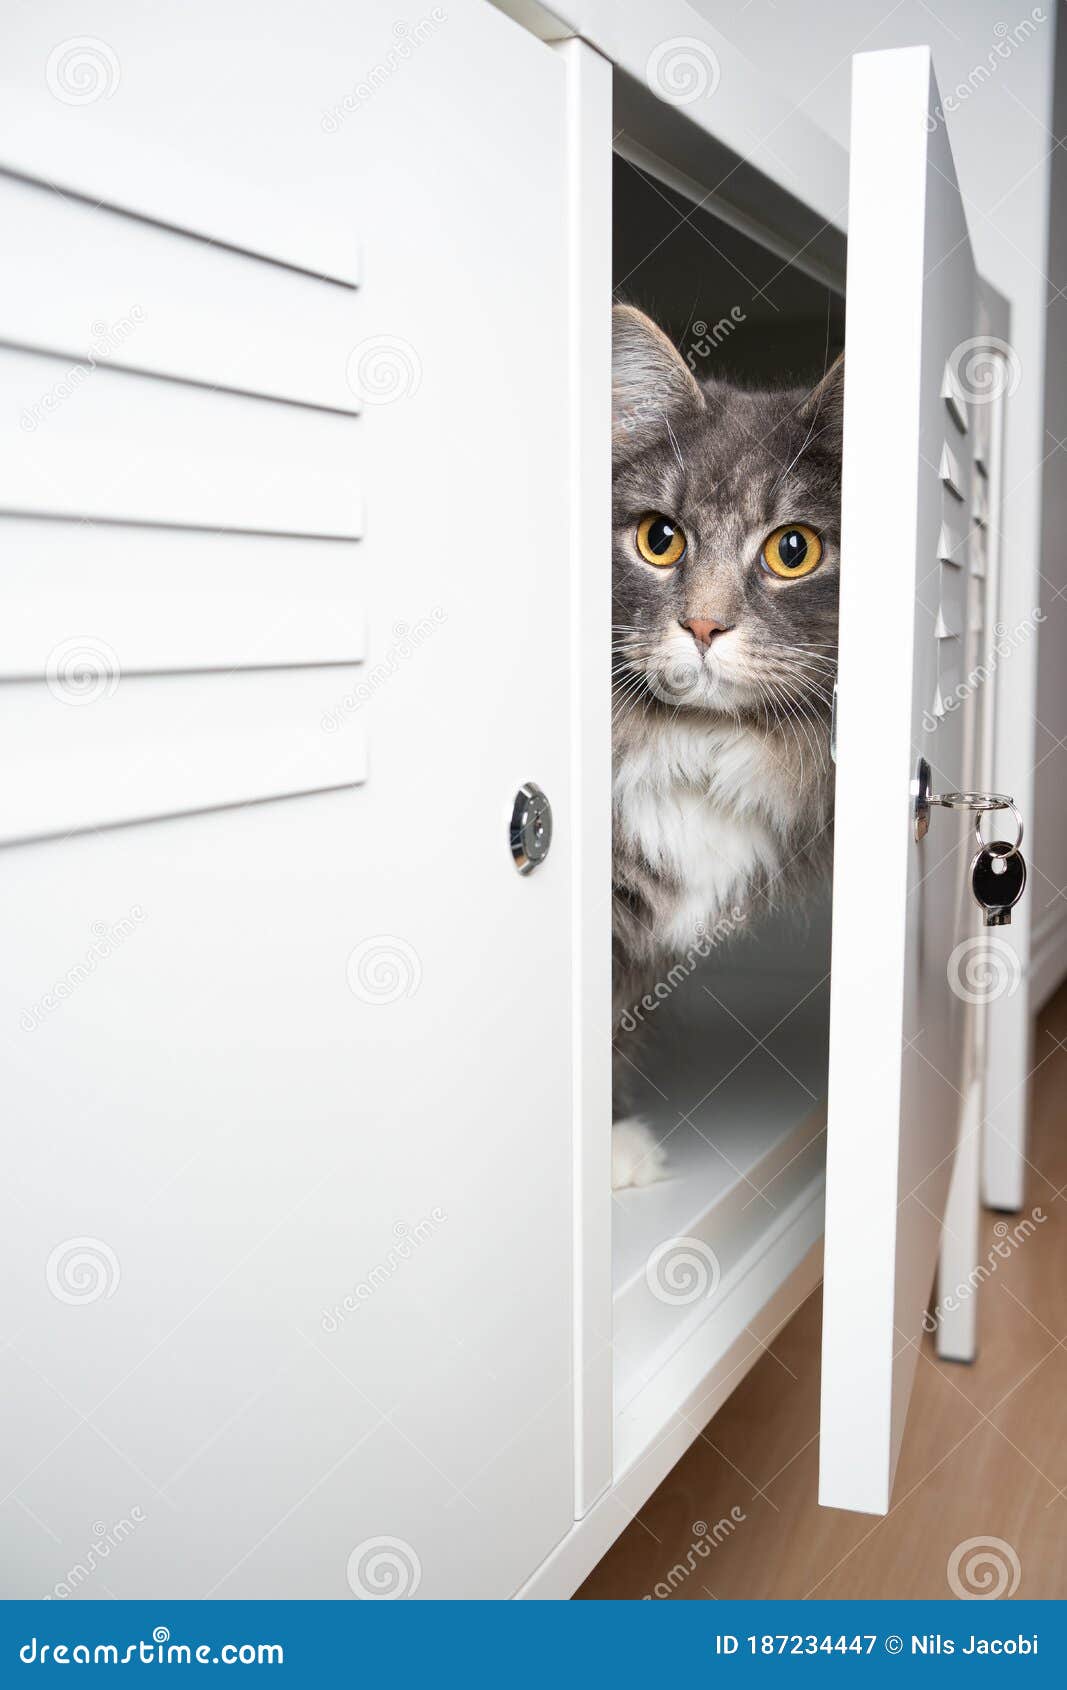 gato-escondido-en-el-armario-un-bonito-de-maine-blanco-y-gris-pelo-largo-detrás-la-puerta-dent...jpg